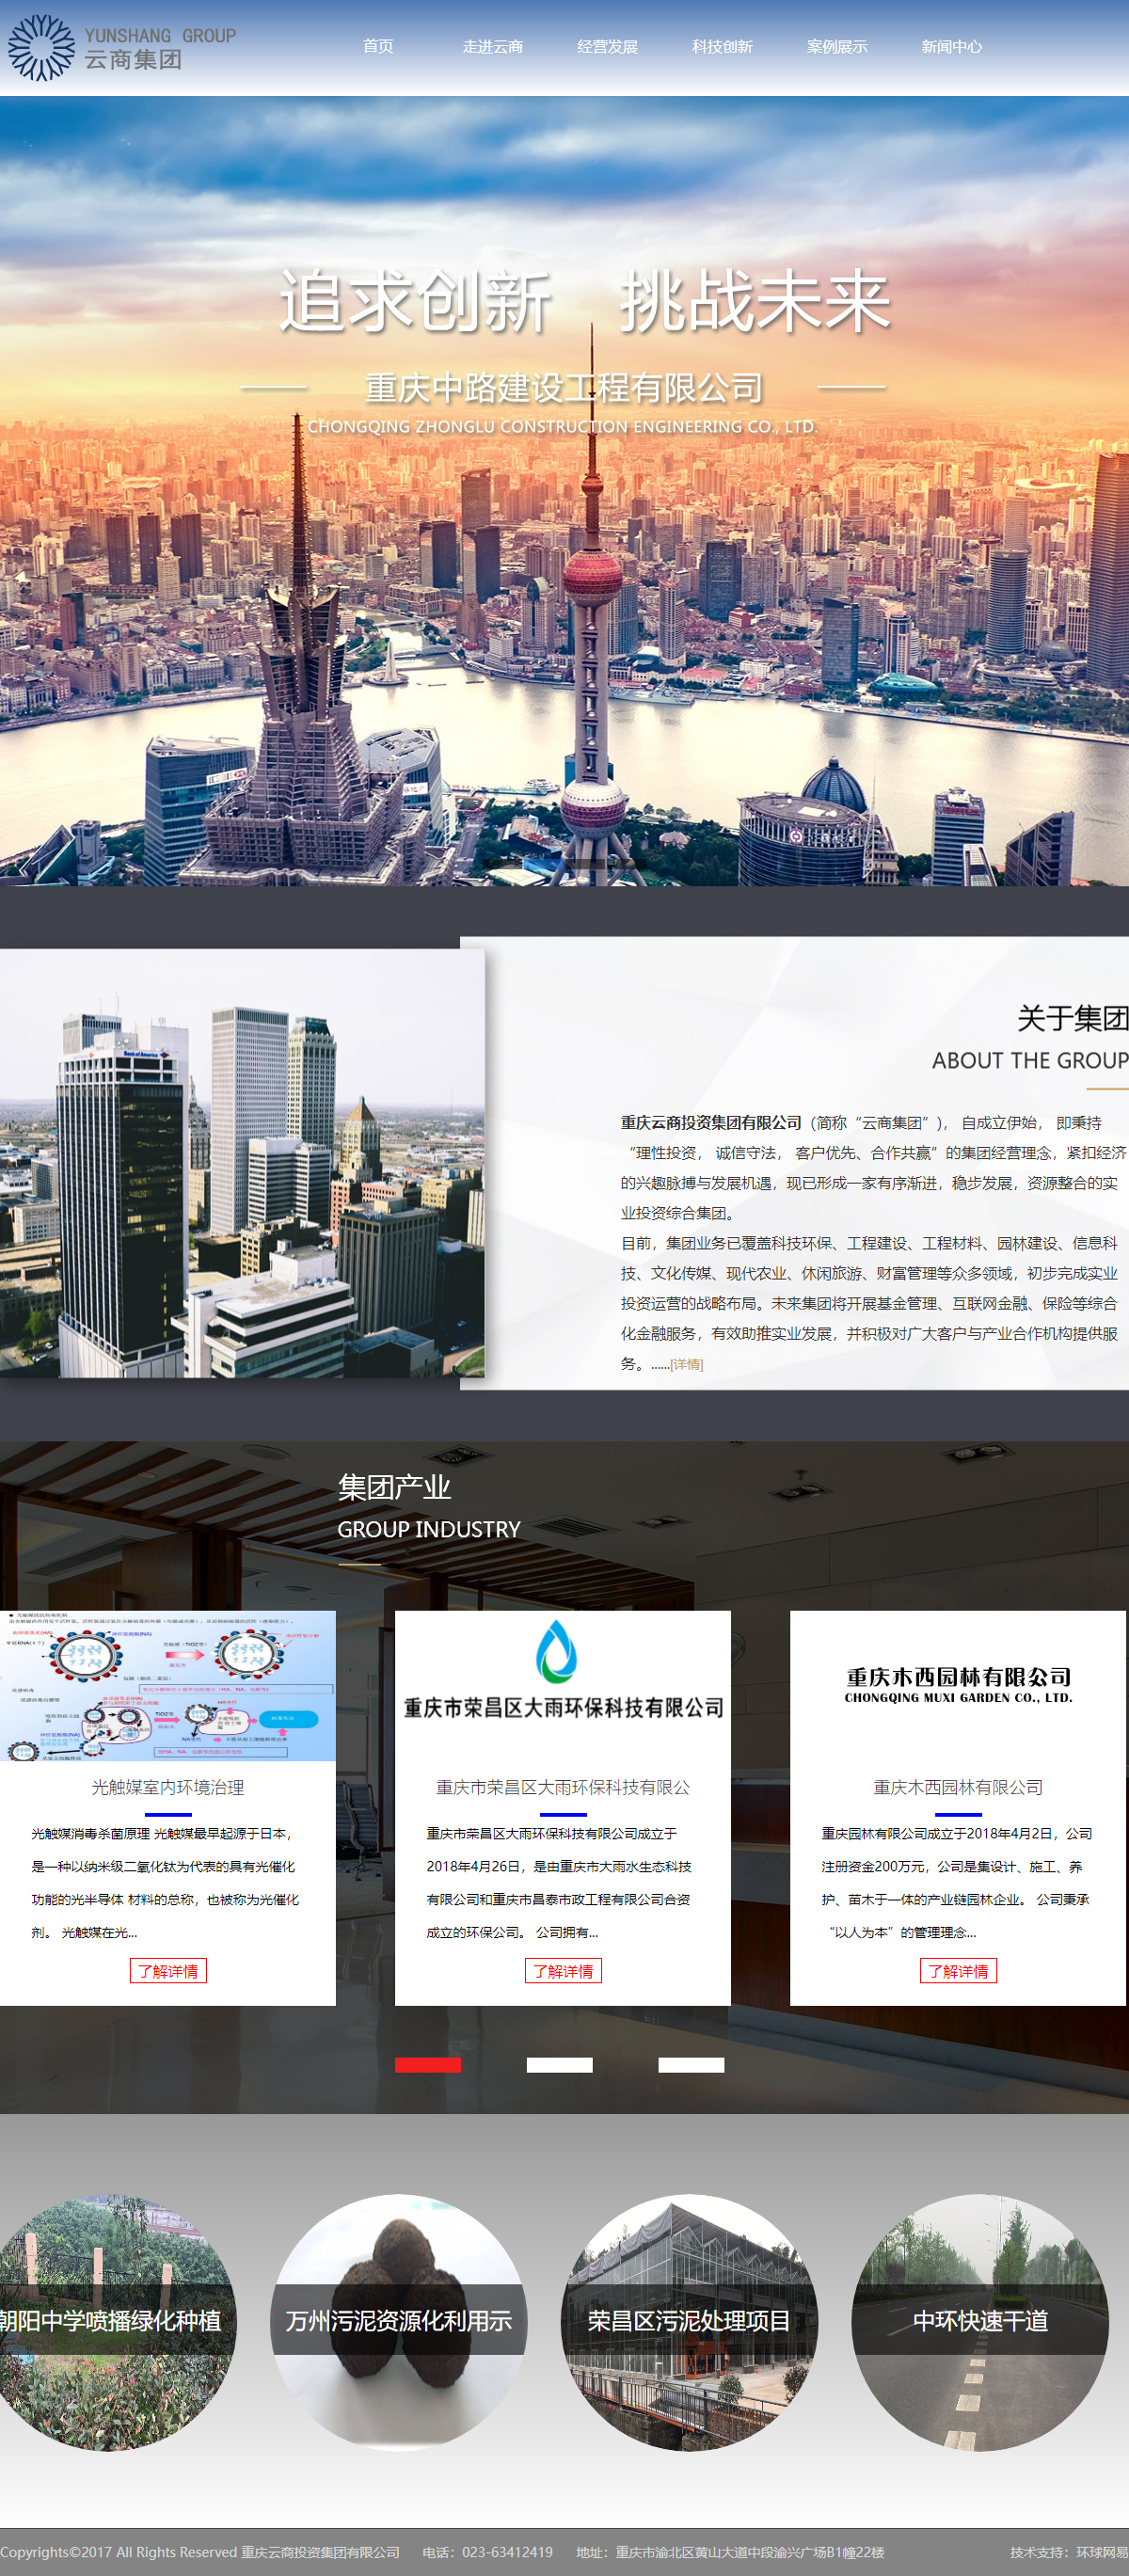 重庆云商投资集团有限公司网站案例